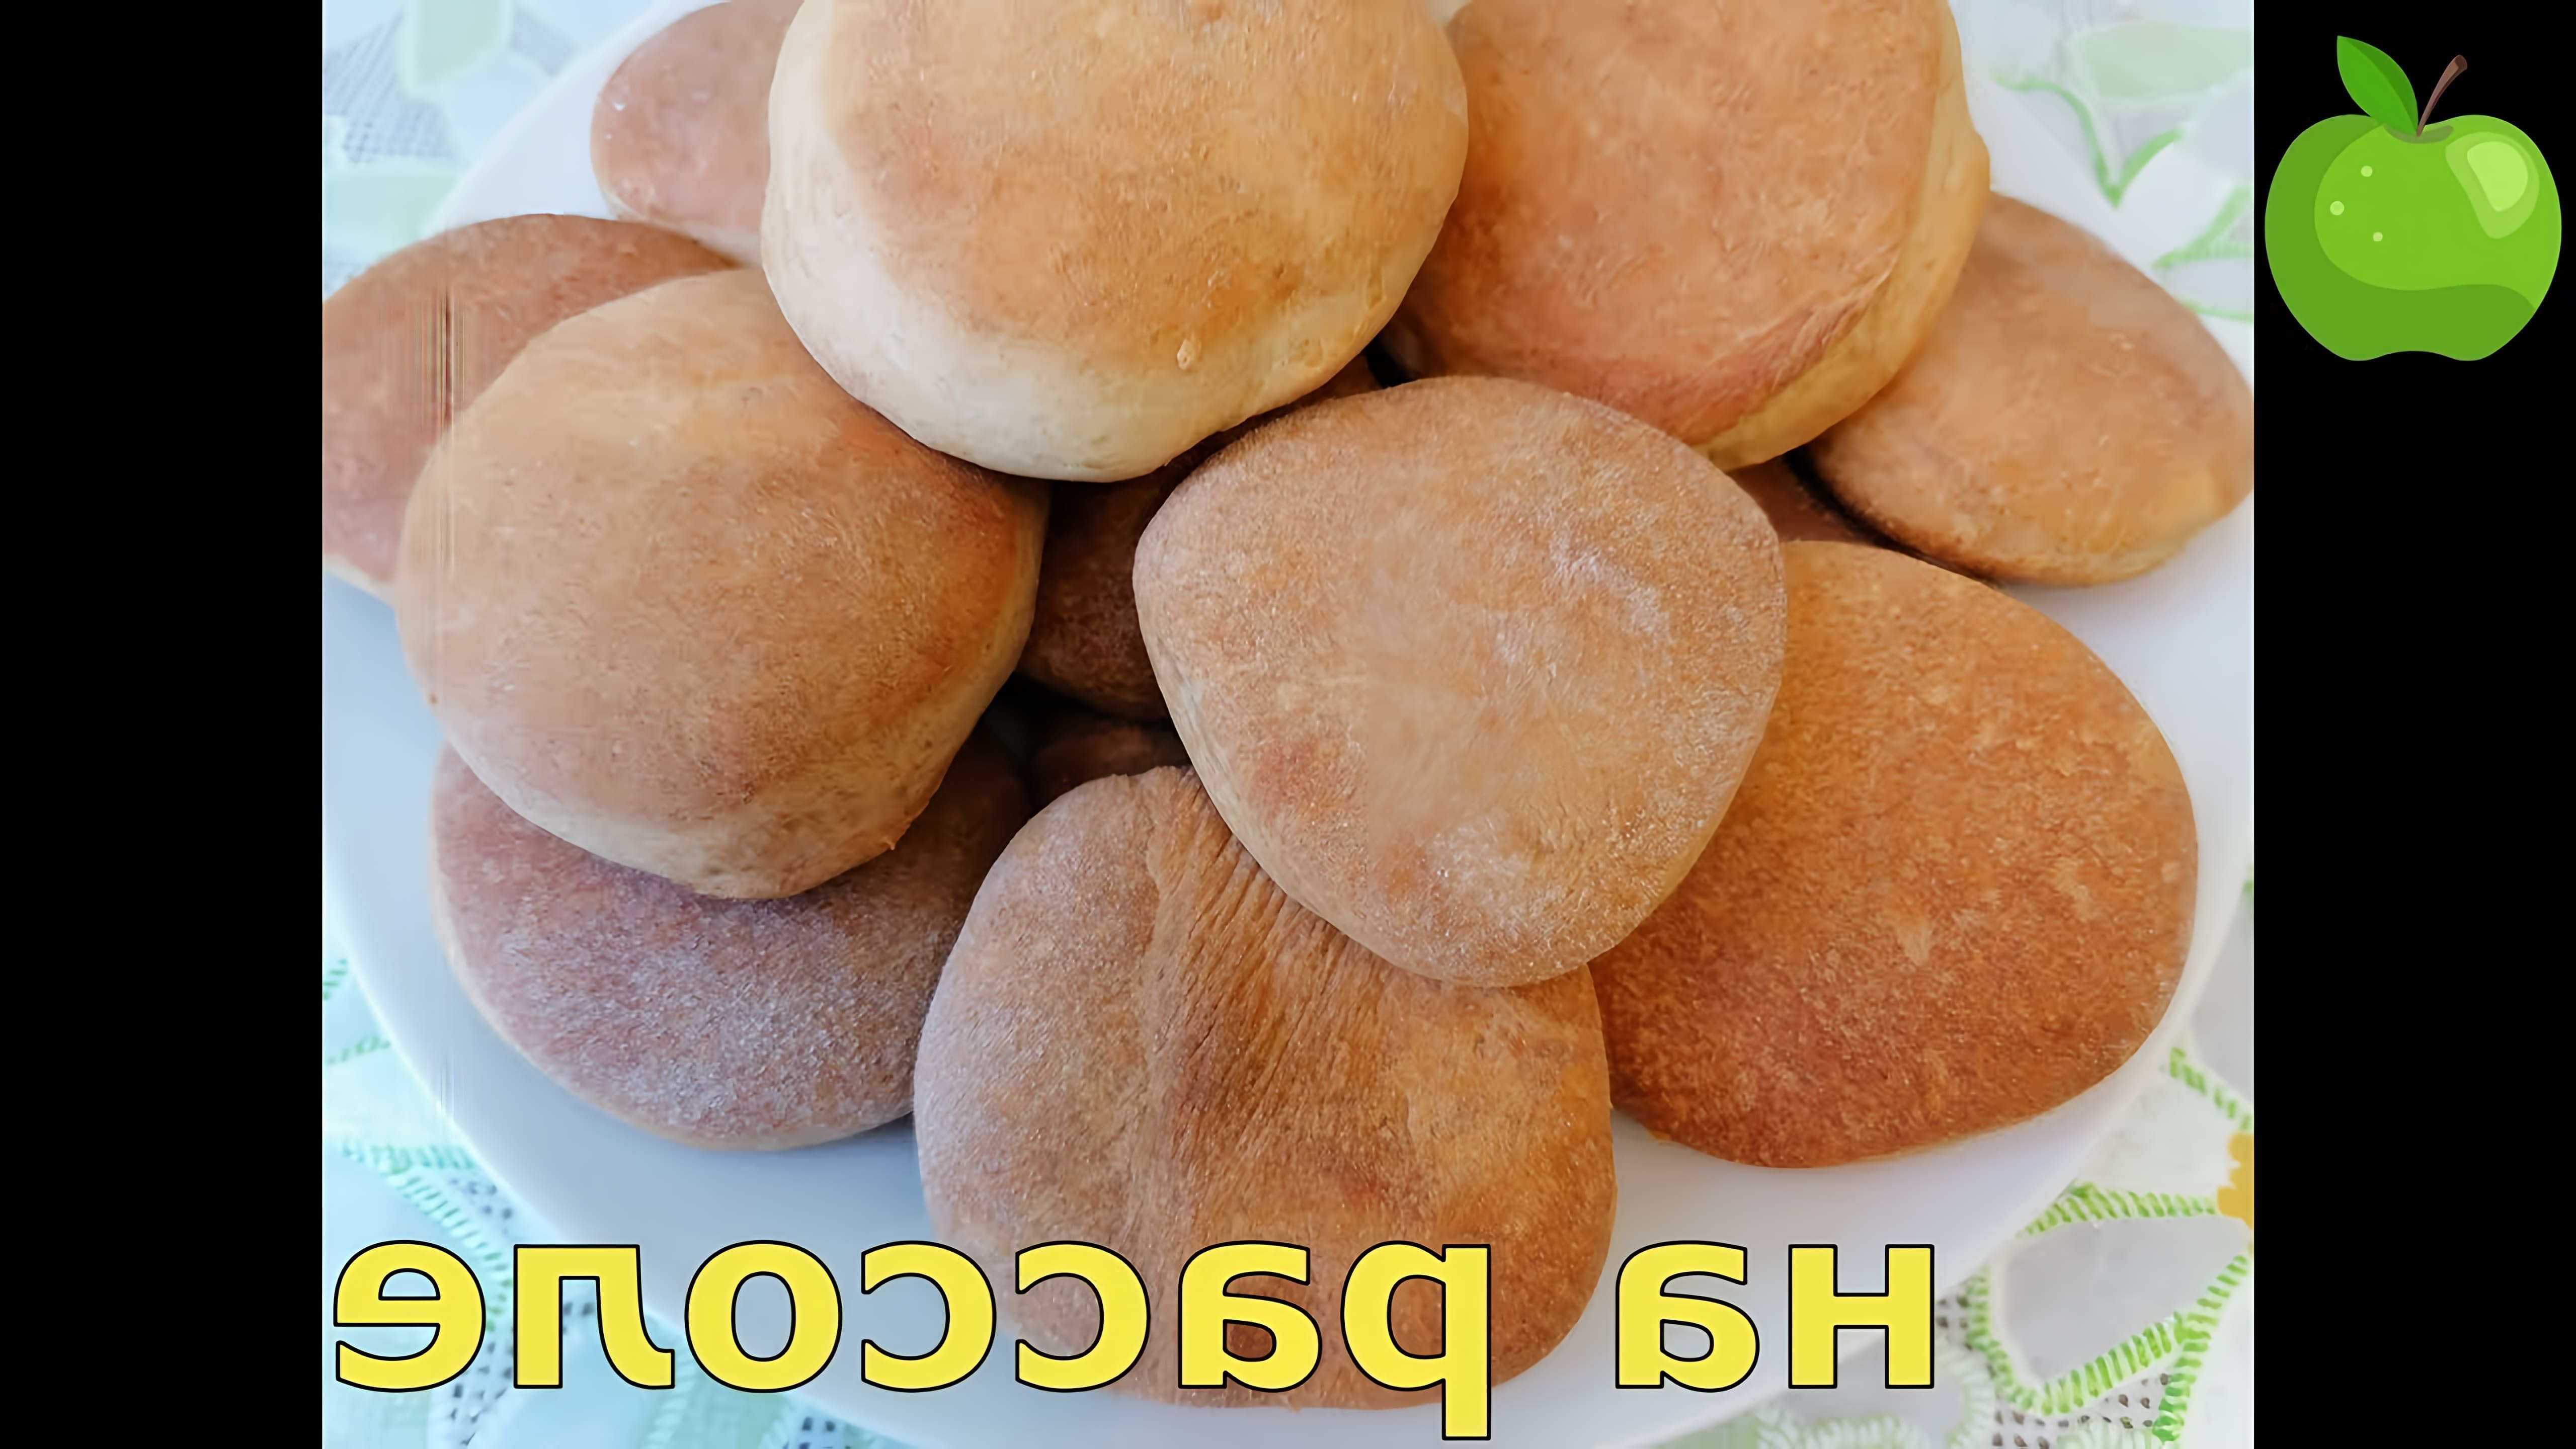 В данном видео демонстрируется рецепт приготовления печенья на рассоле